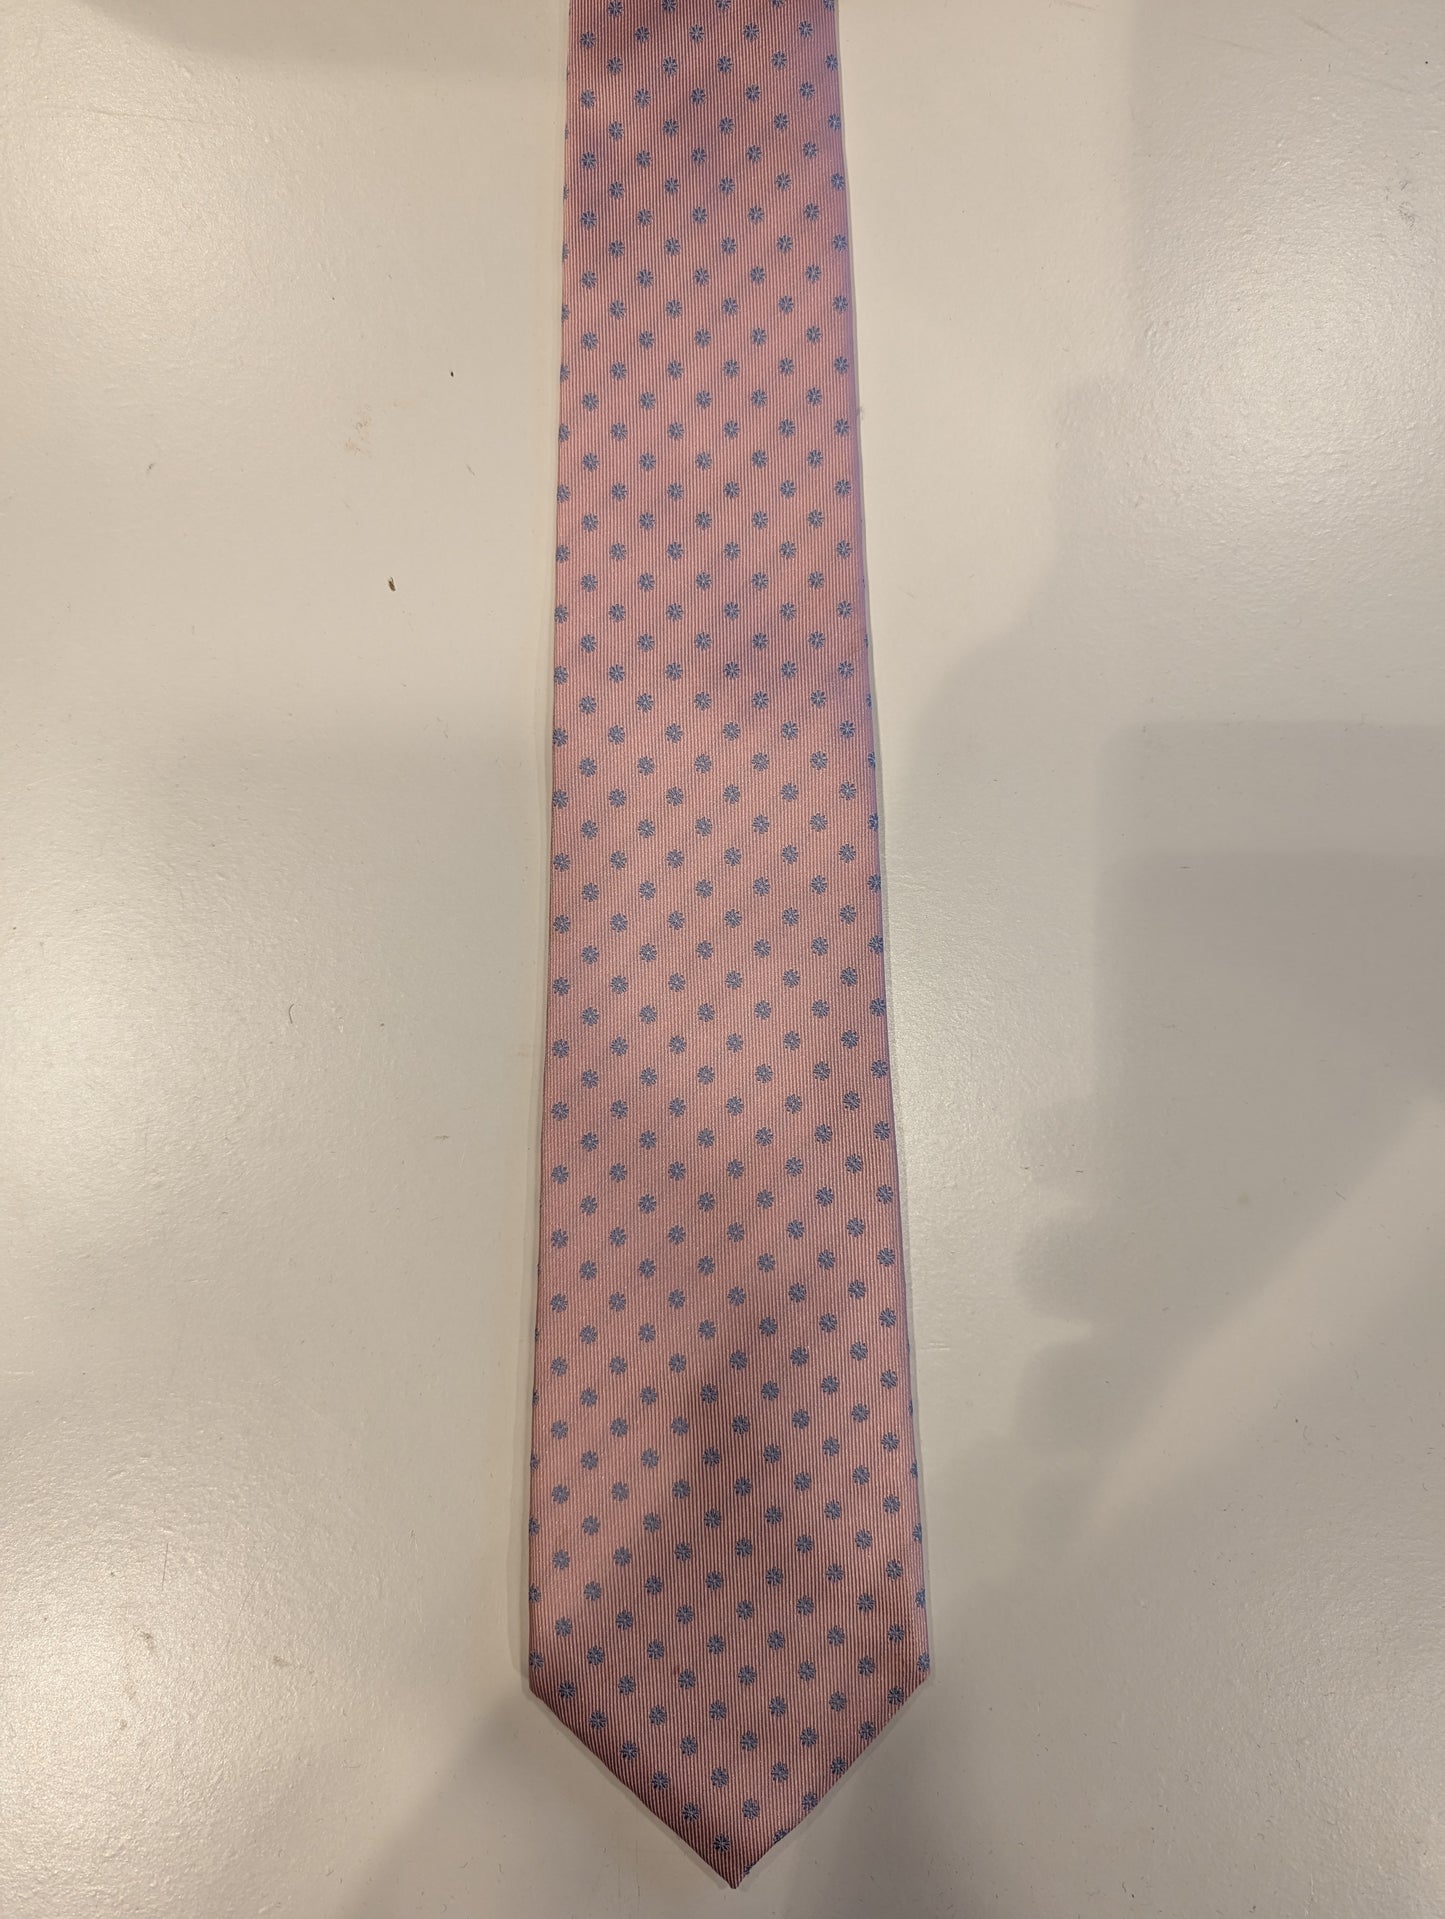 Tie per officiare. Motivo rosa.